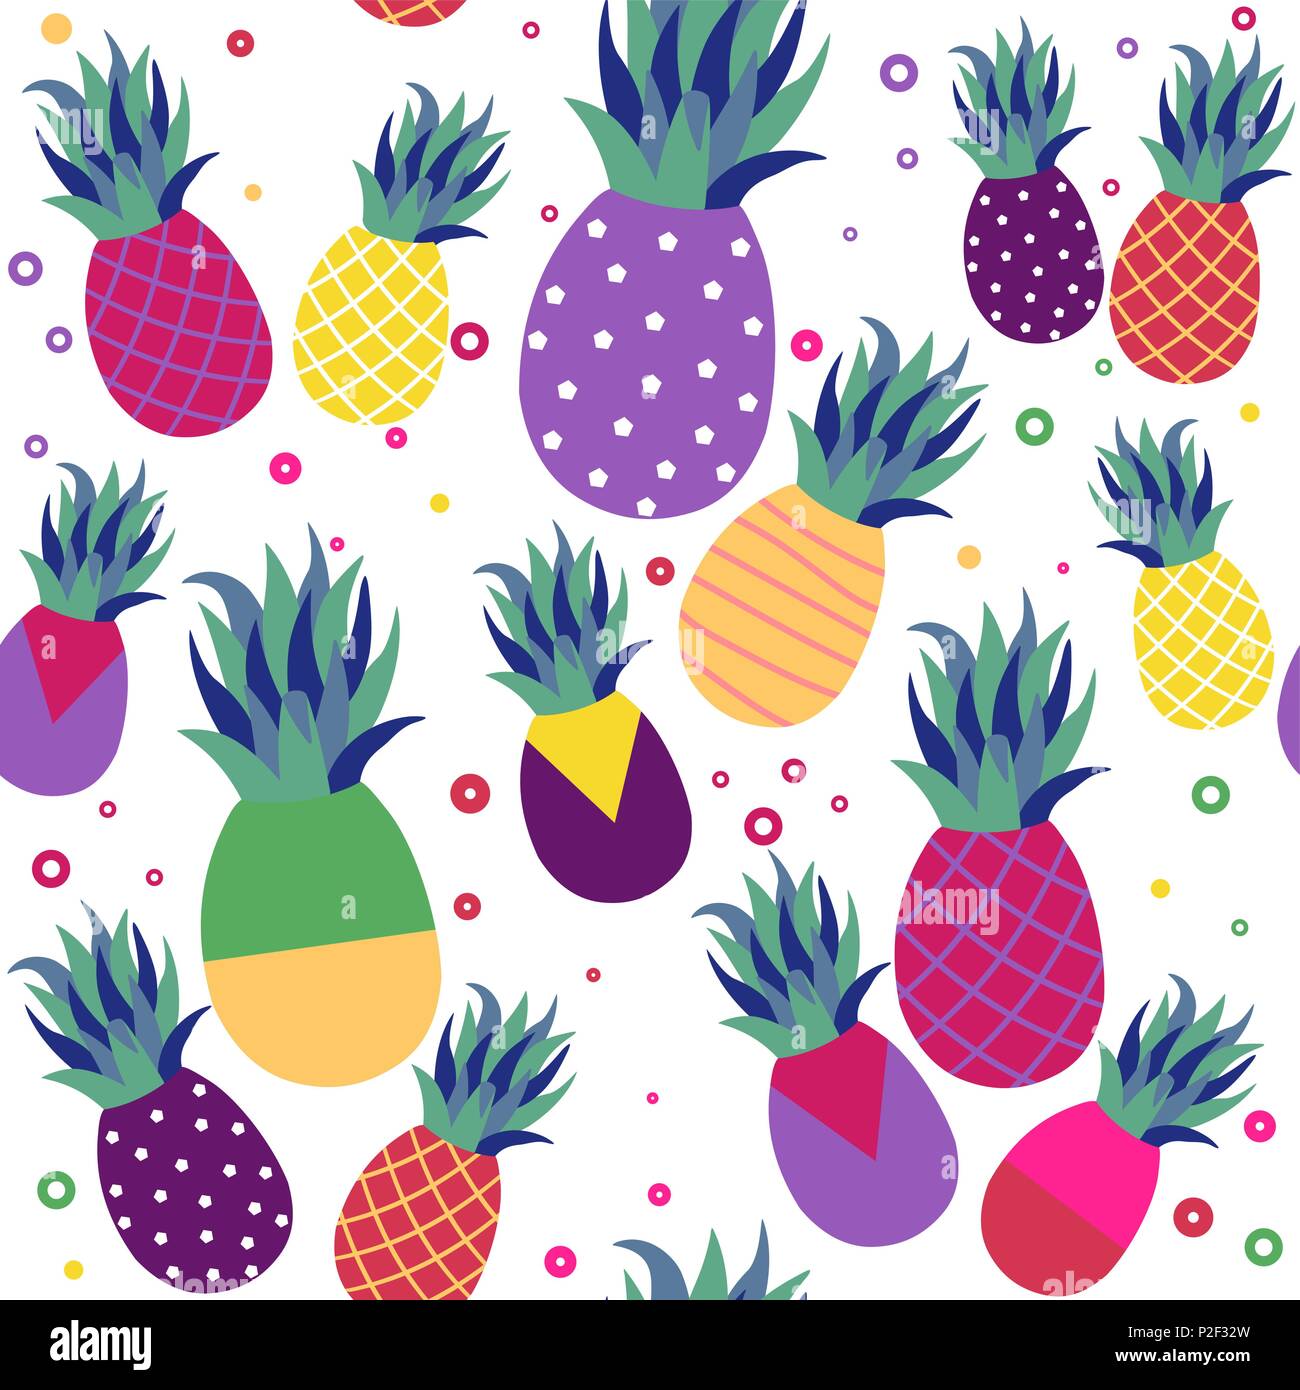 Transparente d'été pattern design, fruit d'ananas avec abstract art colorés idéal pour fun fashion journal papier ou tissu. Vecteur EPS10. Illustration de Vecteur